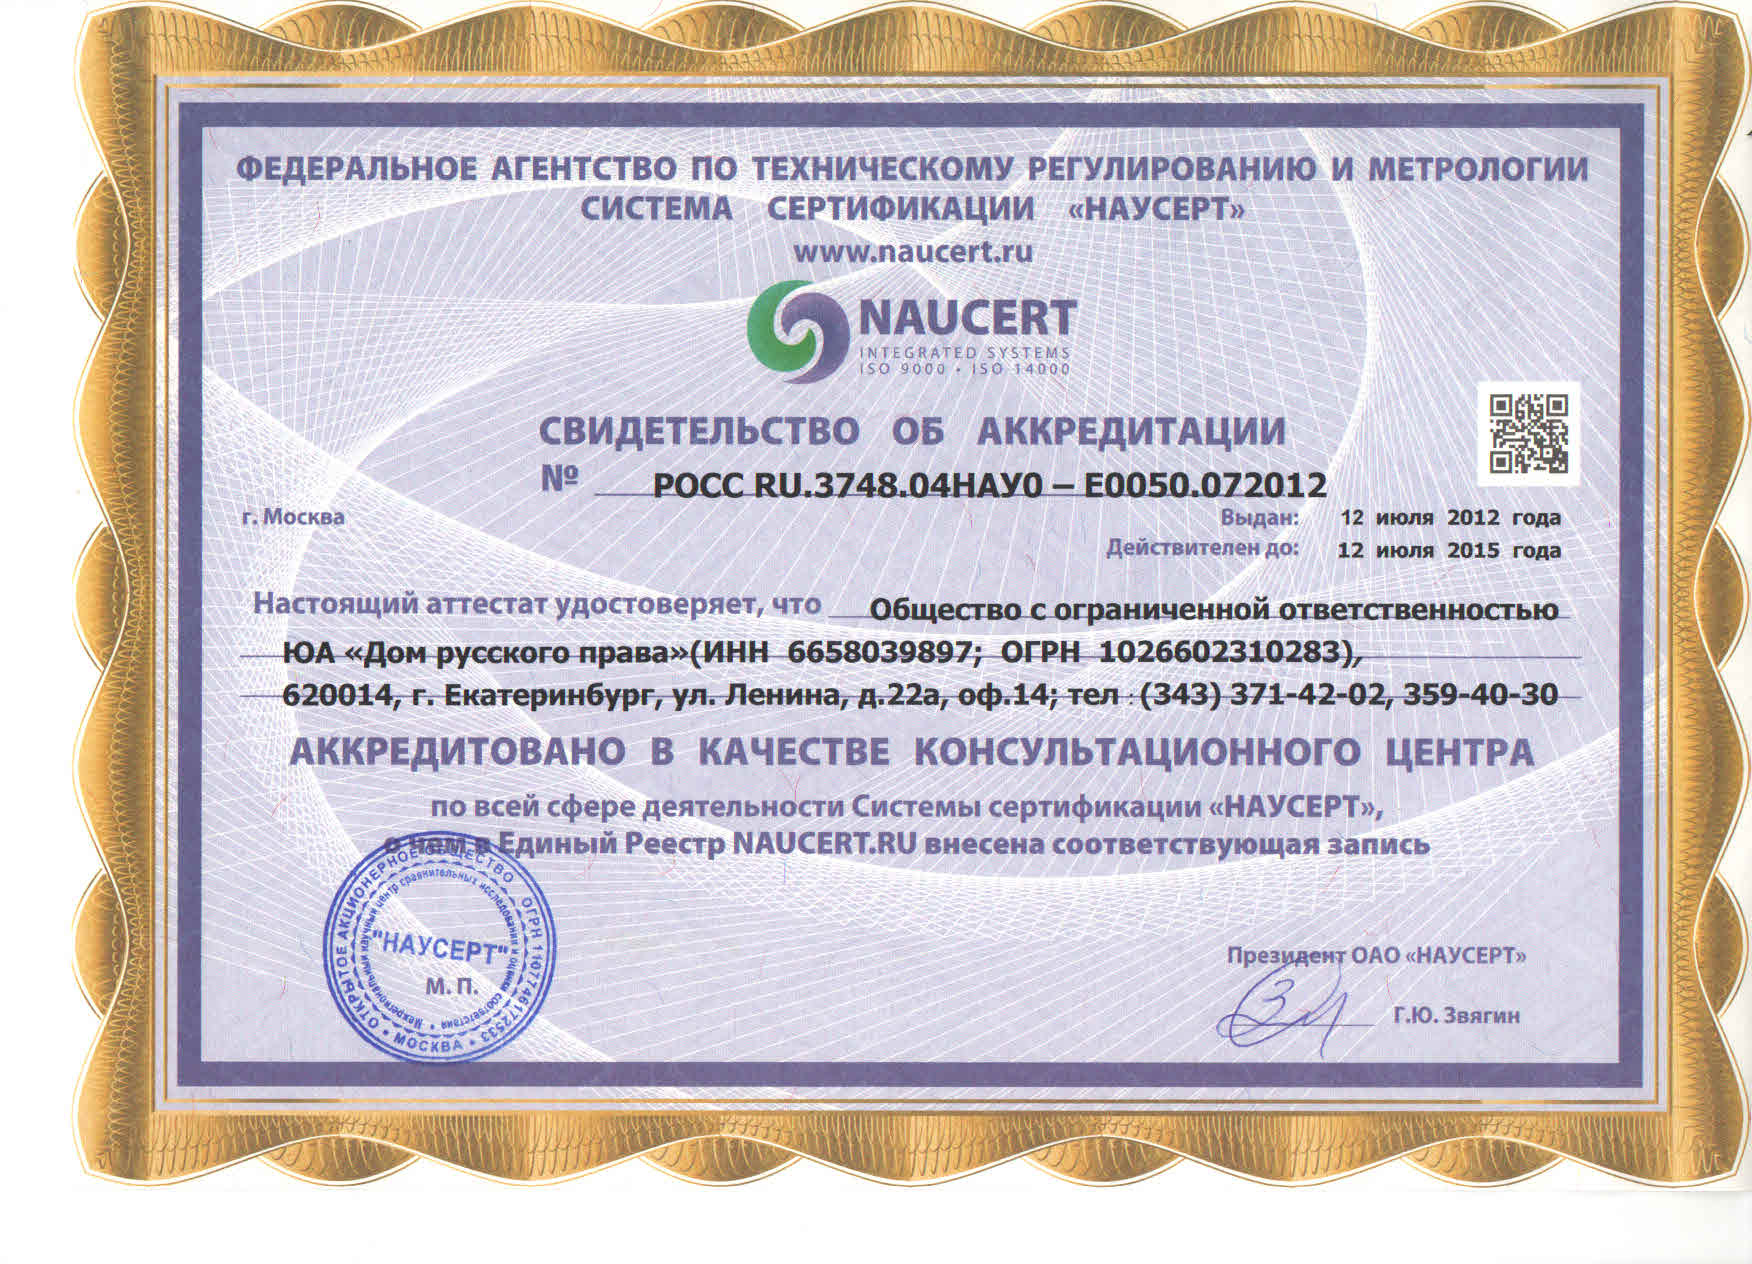 Юридическое агентство "Дом Русского Права" аккредитовано в качестве консультационного центра по всей сфере деятельности Системы сертификации "НАУСЕРТ"